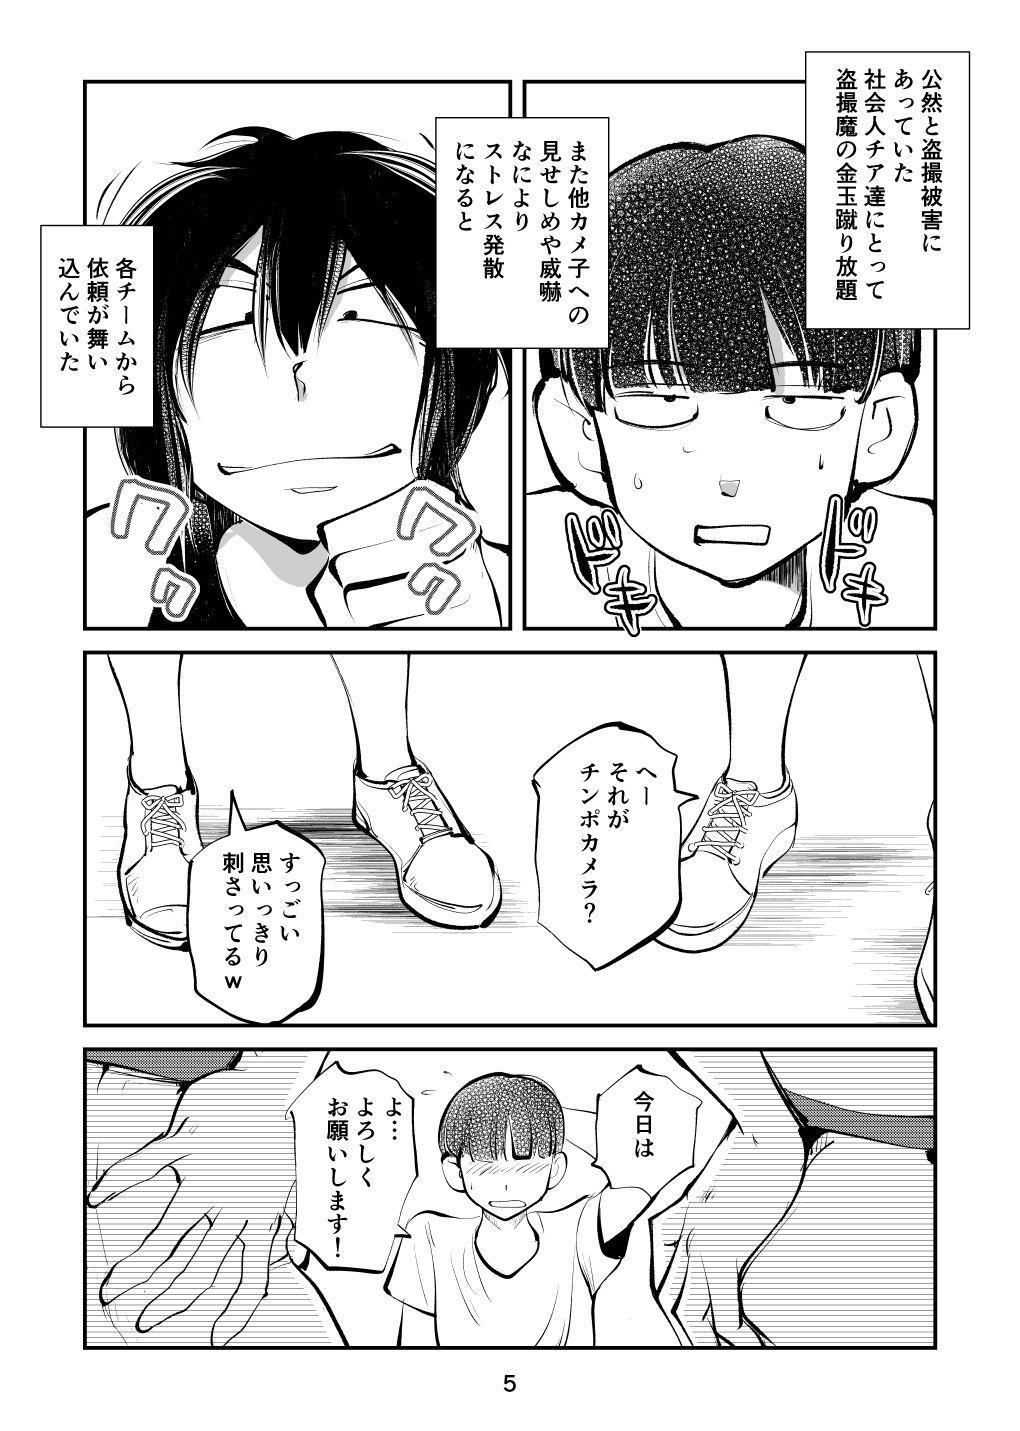 Banheiro Kinkeri Cheer Girl VS Tosatsuma Shakai Hito Cheer Girl-hen - Original Amador - Page 5